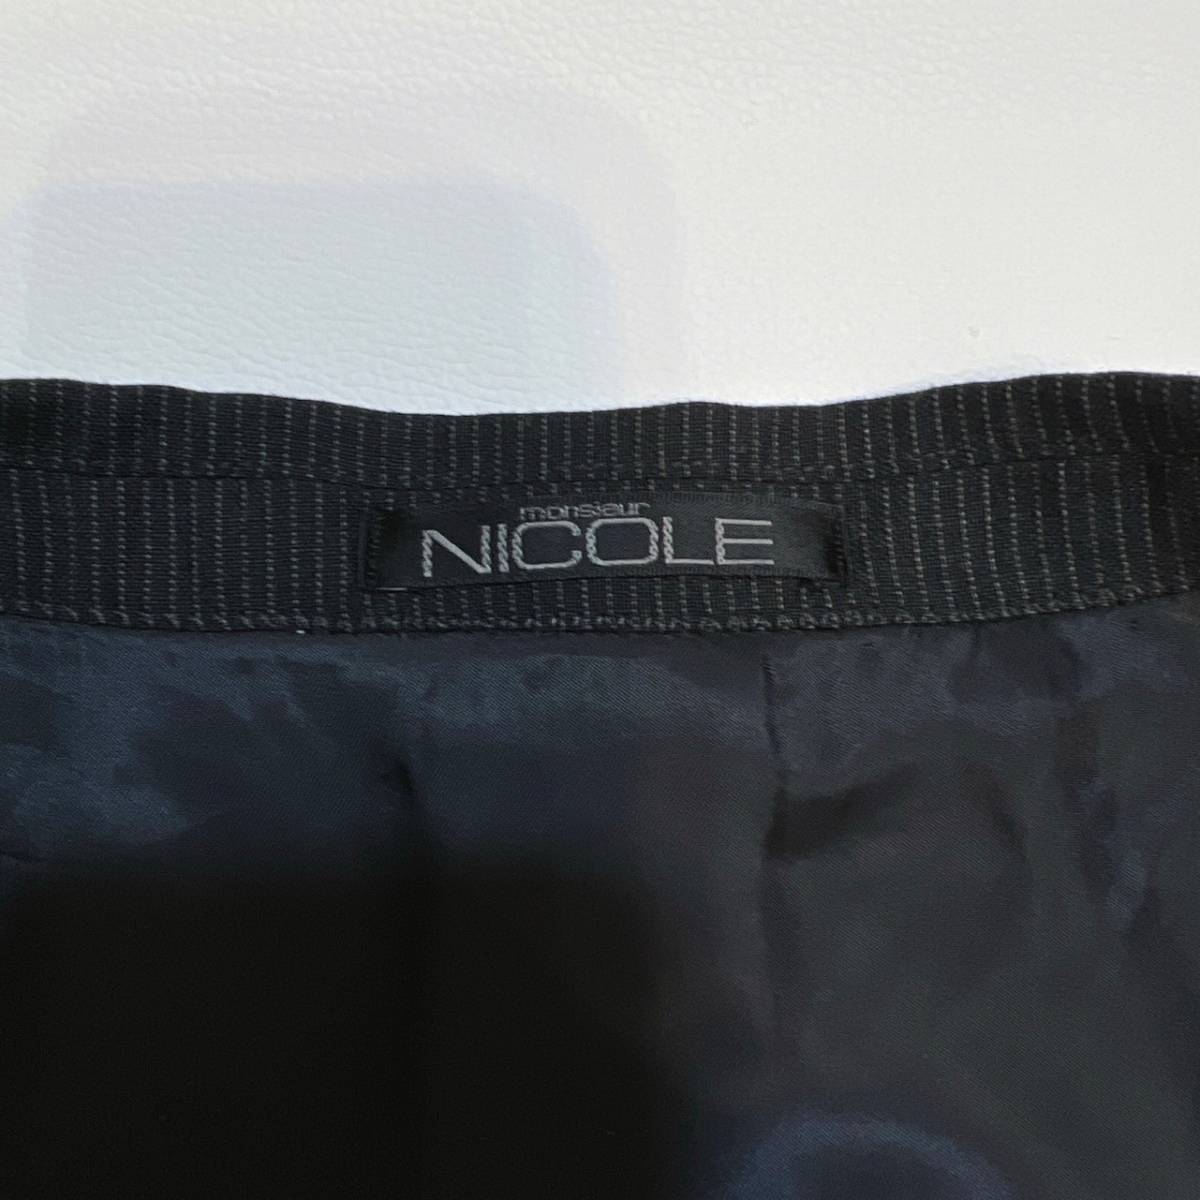 希少XL! ニコル 【溢れる高級感】 NICOLE ムッシュニコル スーツ セットアップ ストライプ ウール 黒 ブラック 背抜き 2B 50 大きいサイズ _画像9